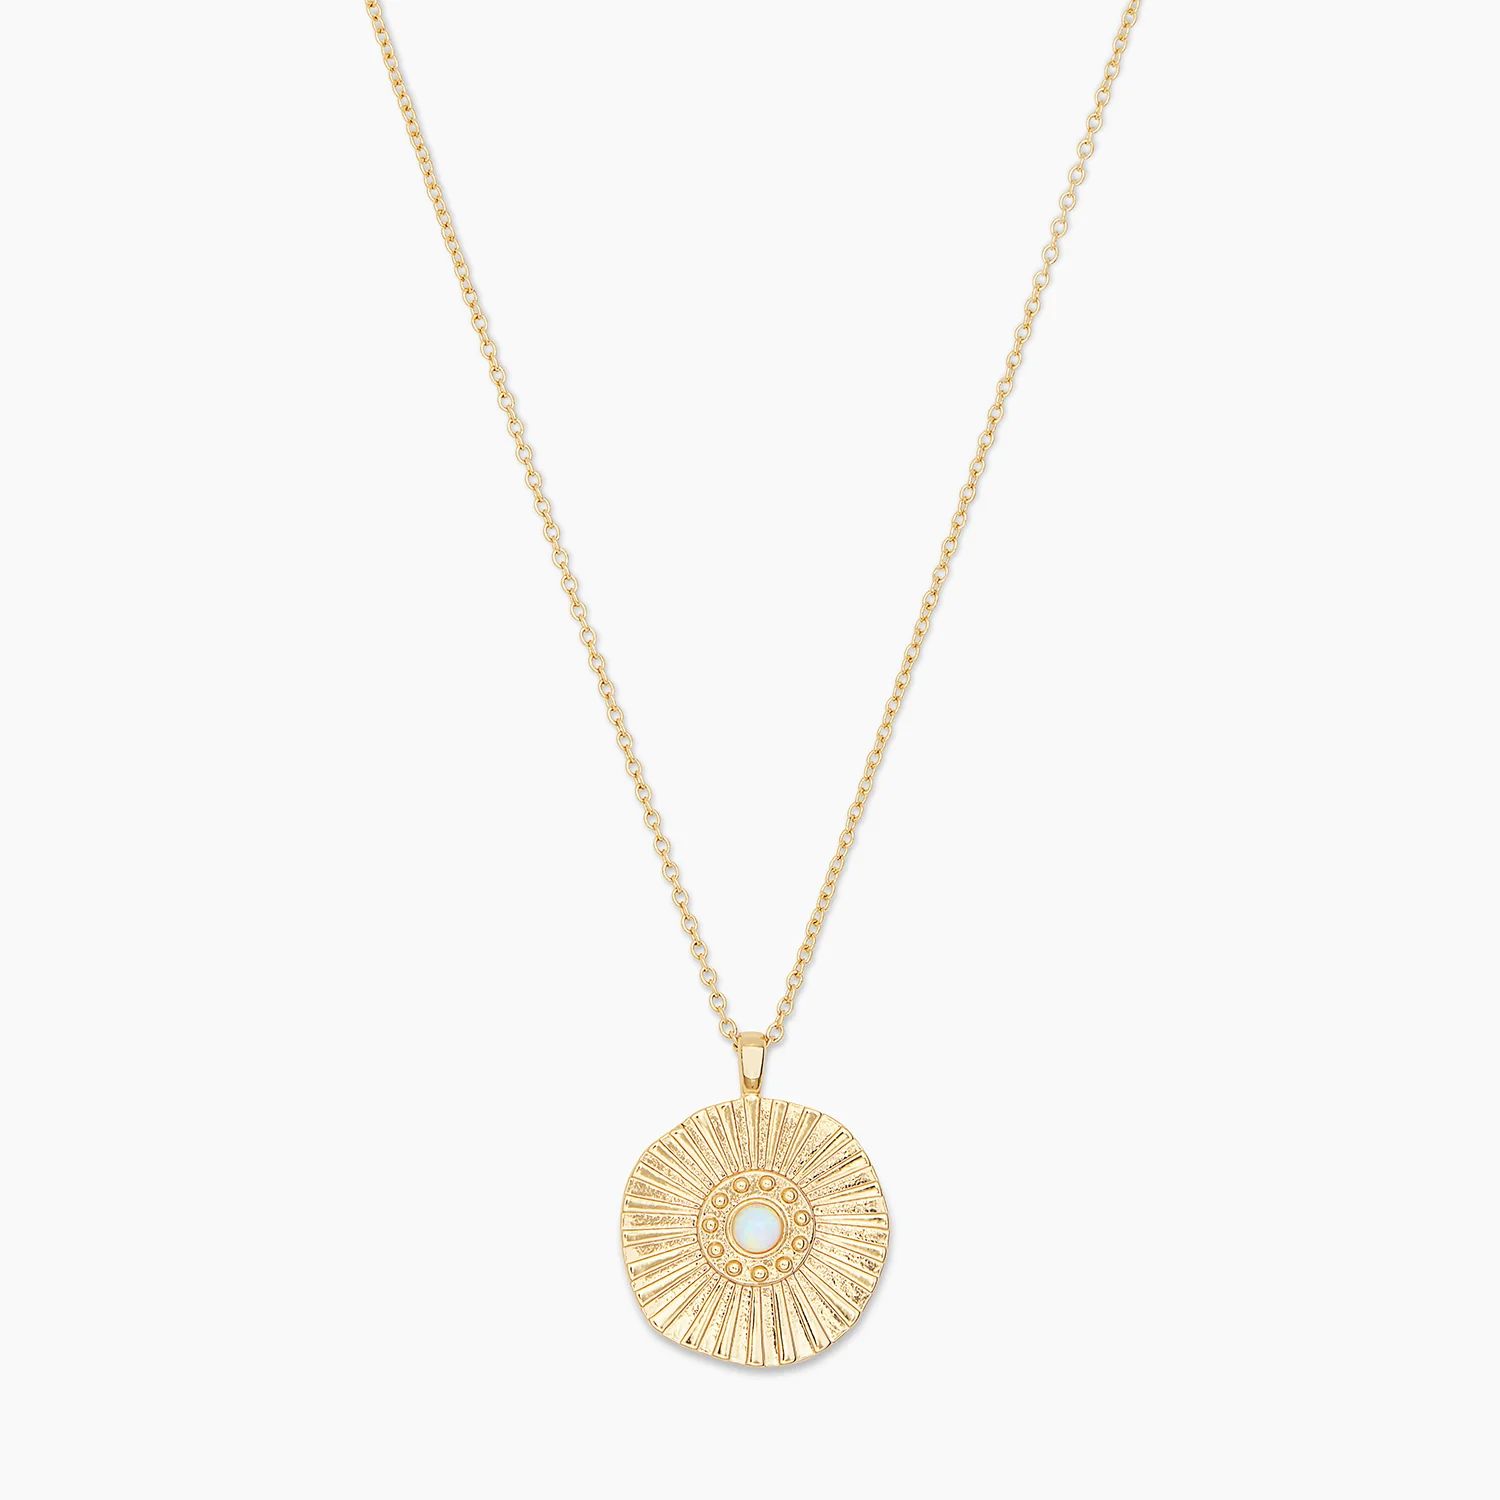 Sunburst Coin Necklace in Gold, Women's by gorjana | Gorjana